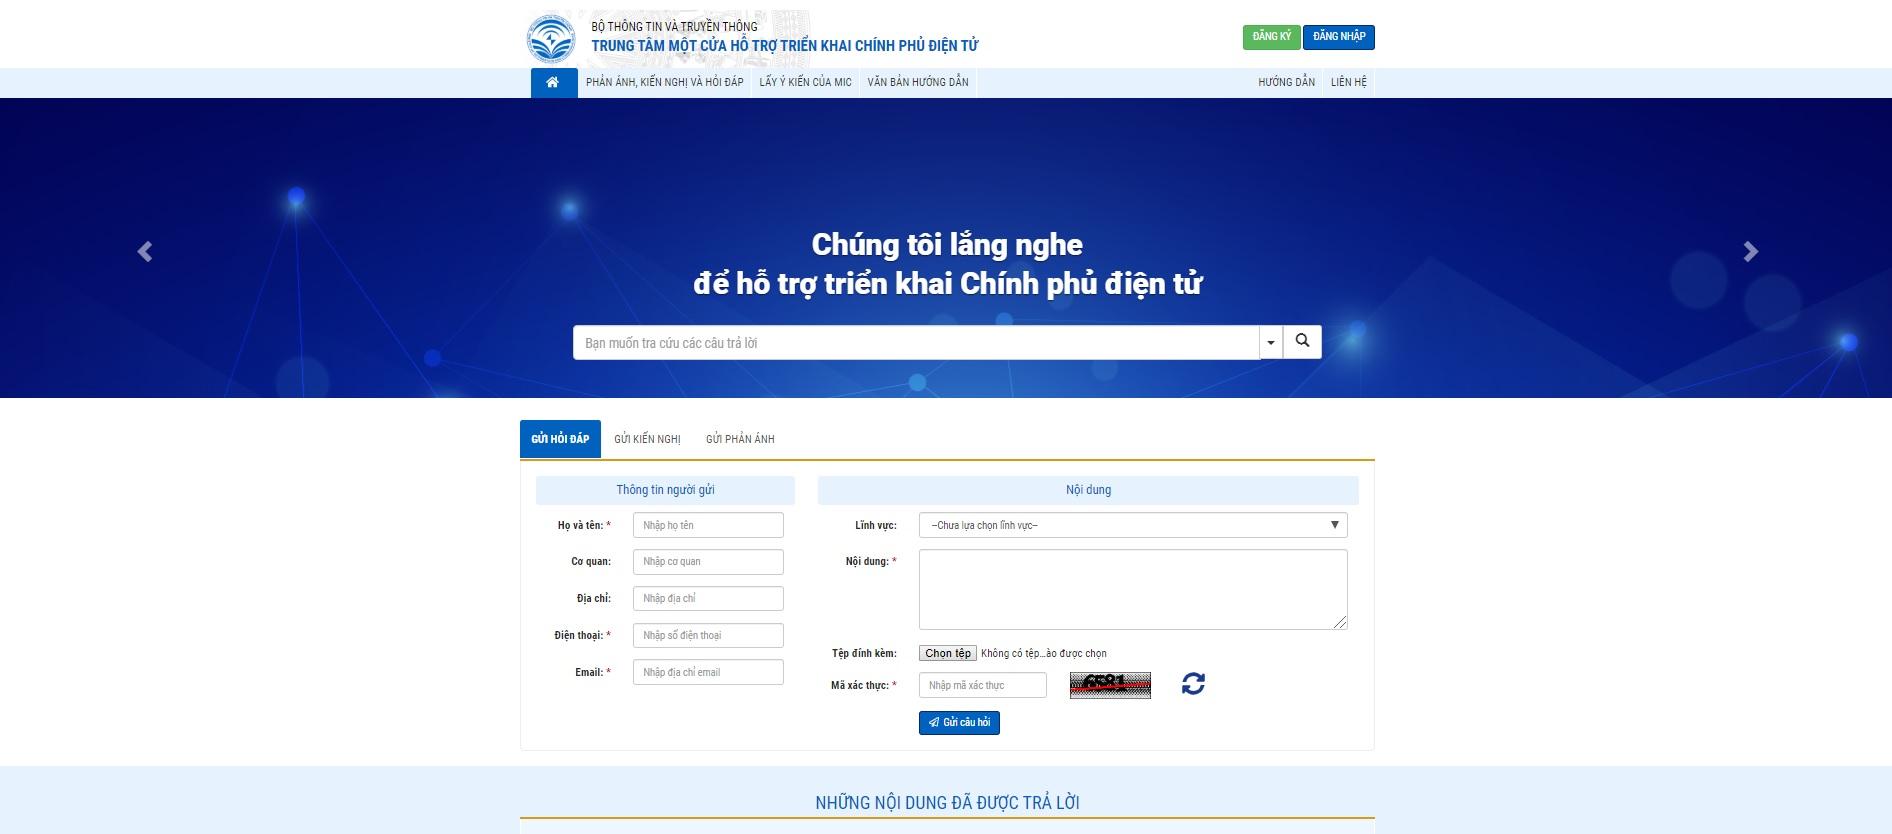 Hệ thống thông tin “Trung tâm một cửa hỗ trợ triển khai Chính phủ điện tử” vừa chính thức đi vào hoạt động tại địa chỉ: http://egov.mic.gov.vn/.